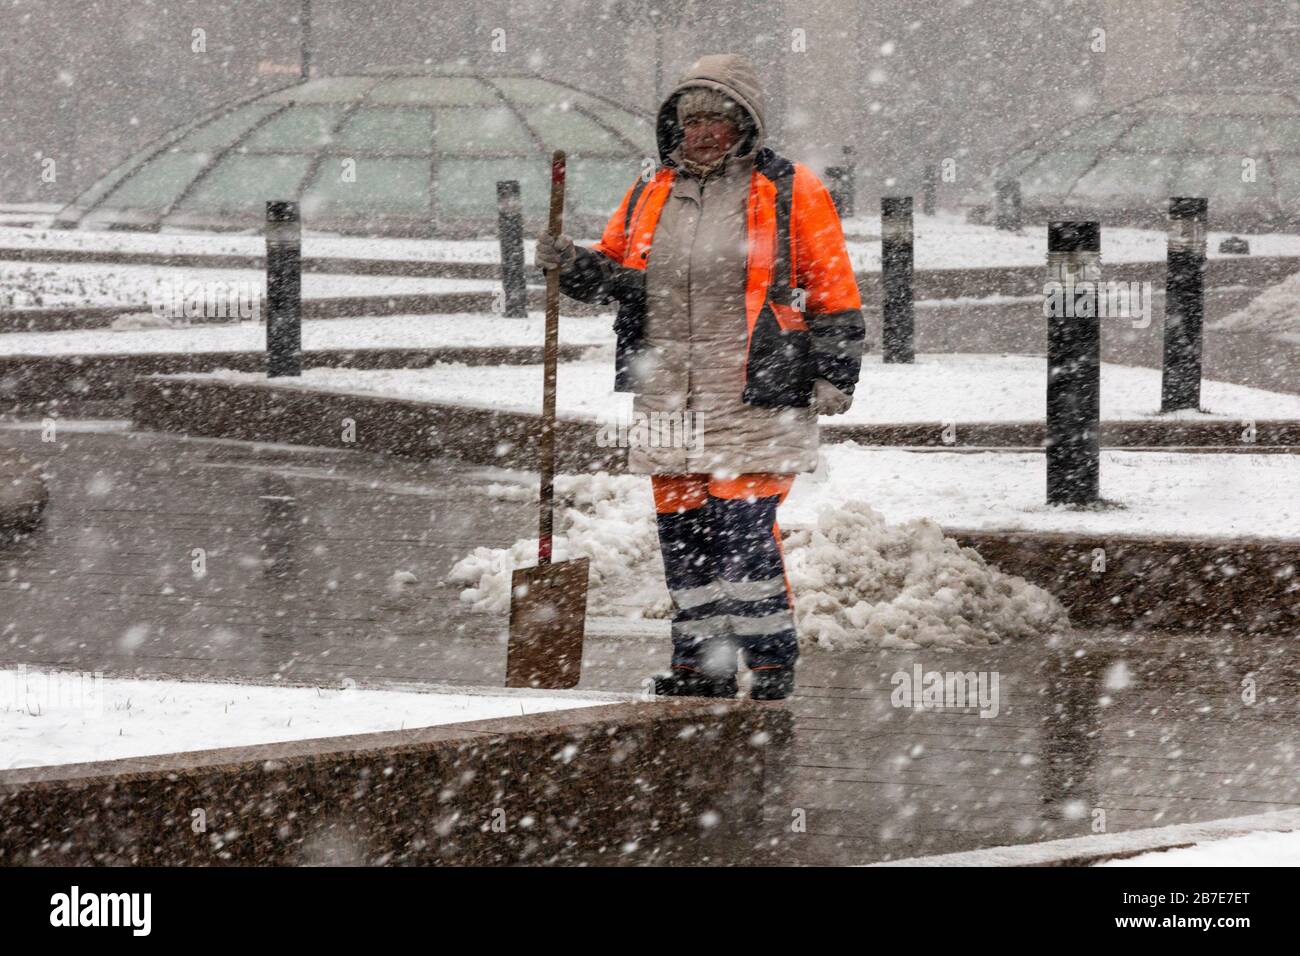 Moscou, Russie - 15 mars 2020: Un employé des services communaux élimine la neige lors d'une chute anormale de neige sur la place Manege dans le centre-ville de Moscou, Russie Banque D'Images